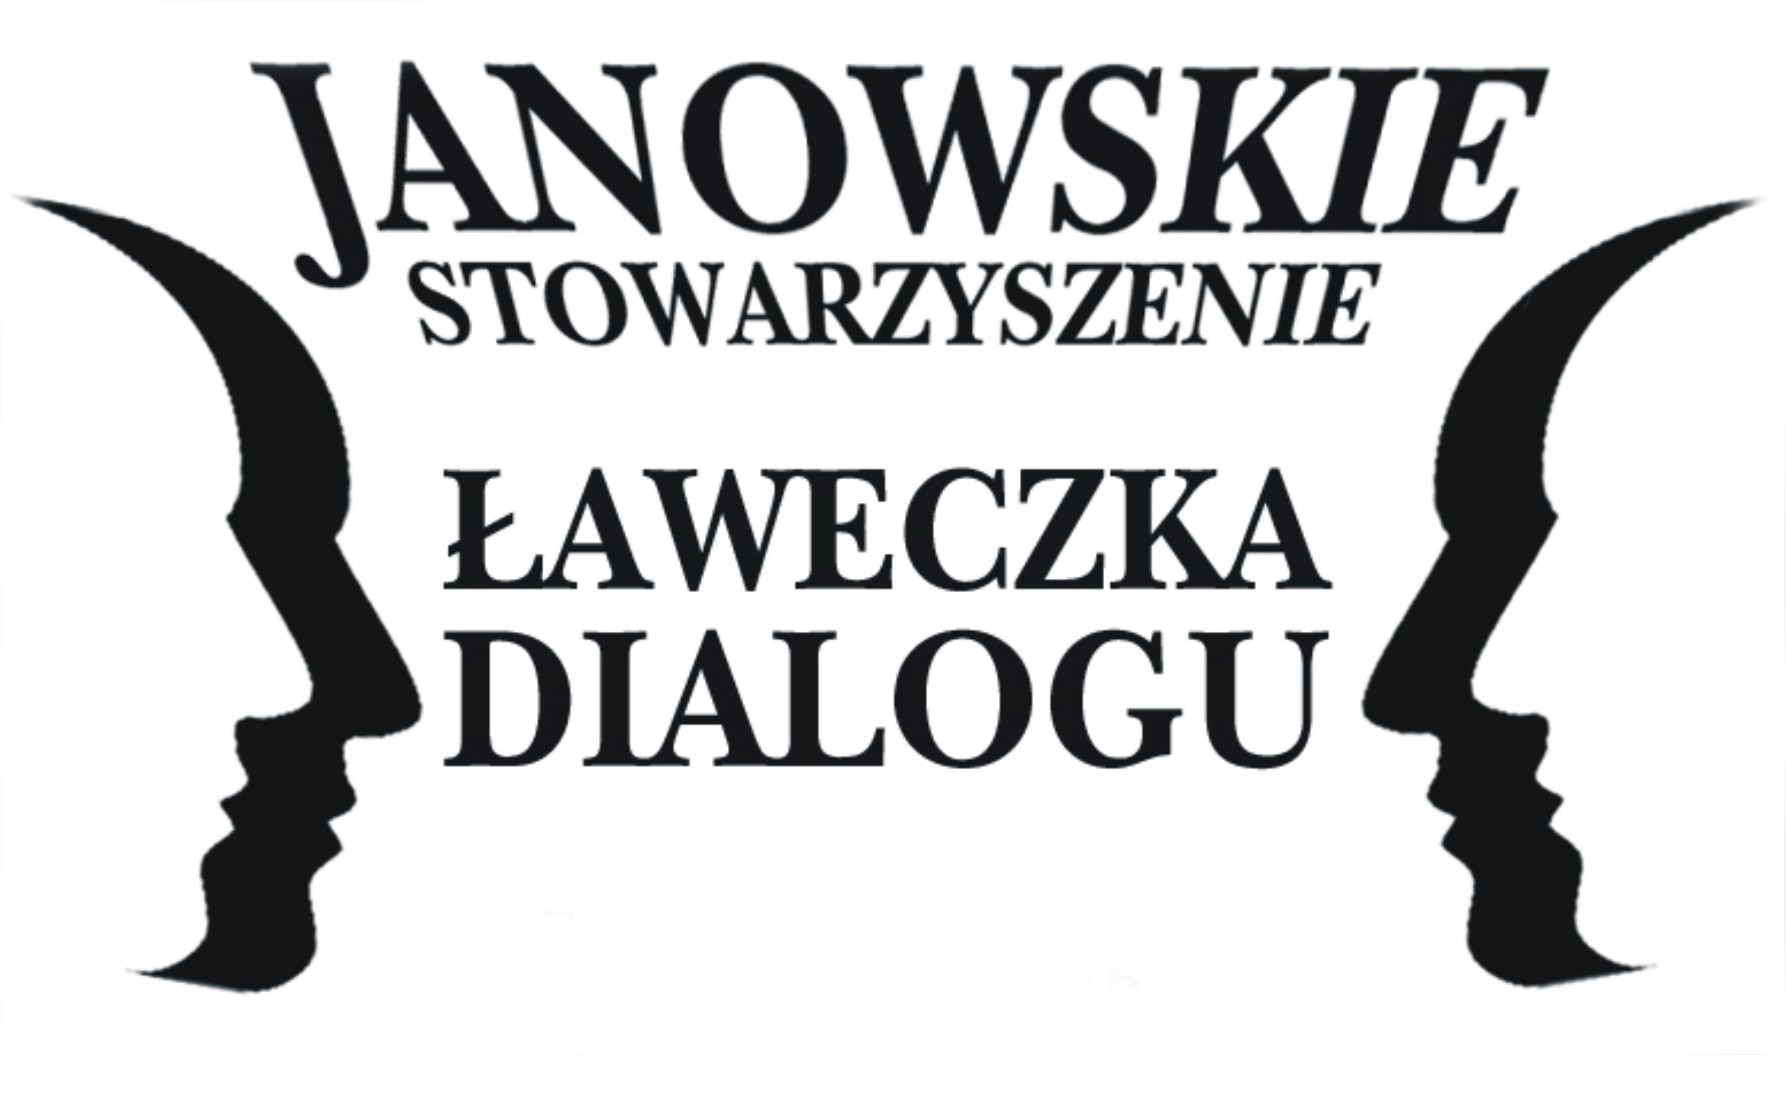 Naprzeciwko siebie dwa kontury ludzkich twarzy pokazane z profilu. Pomiędzy nimi napis Janowskie Stowarzyszenie Ławeczka Dialogu.